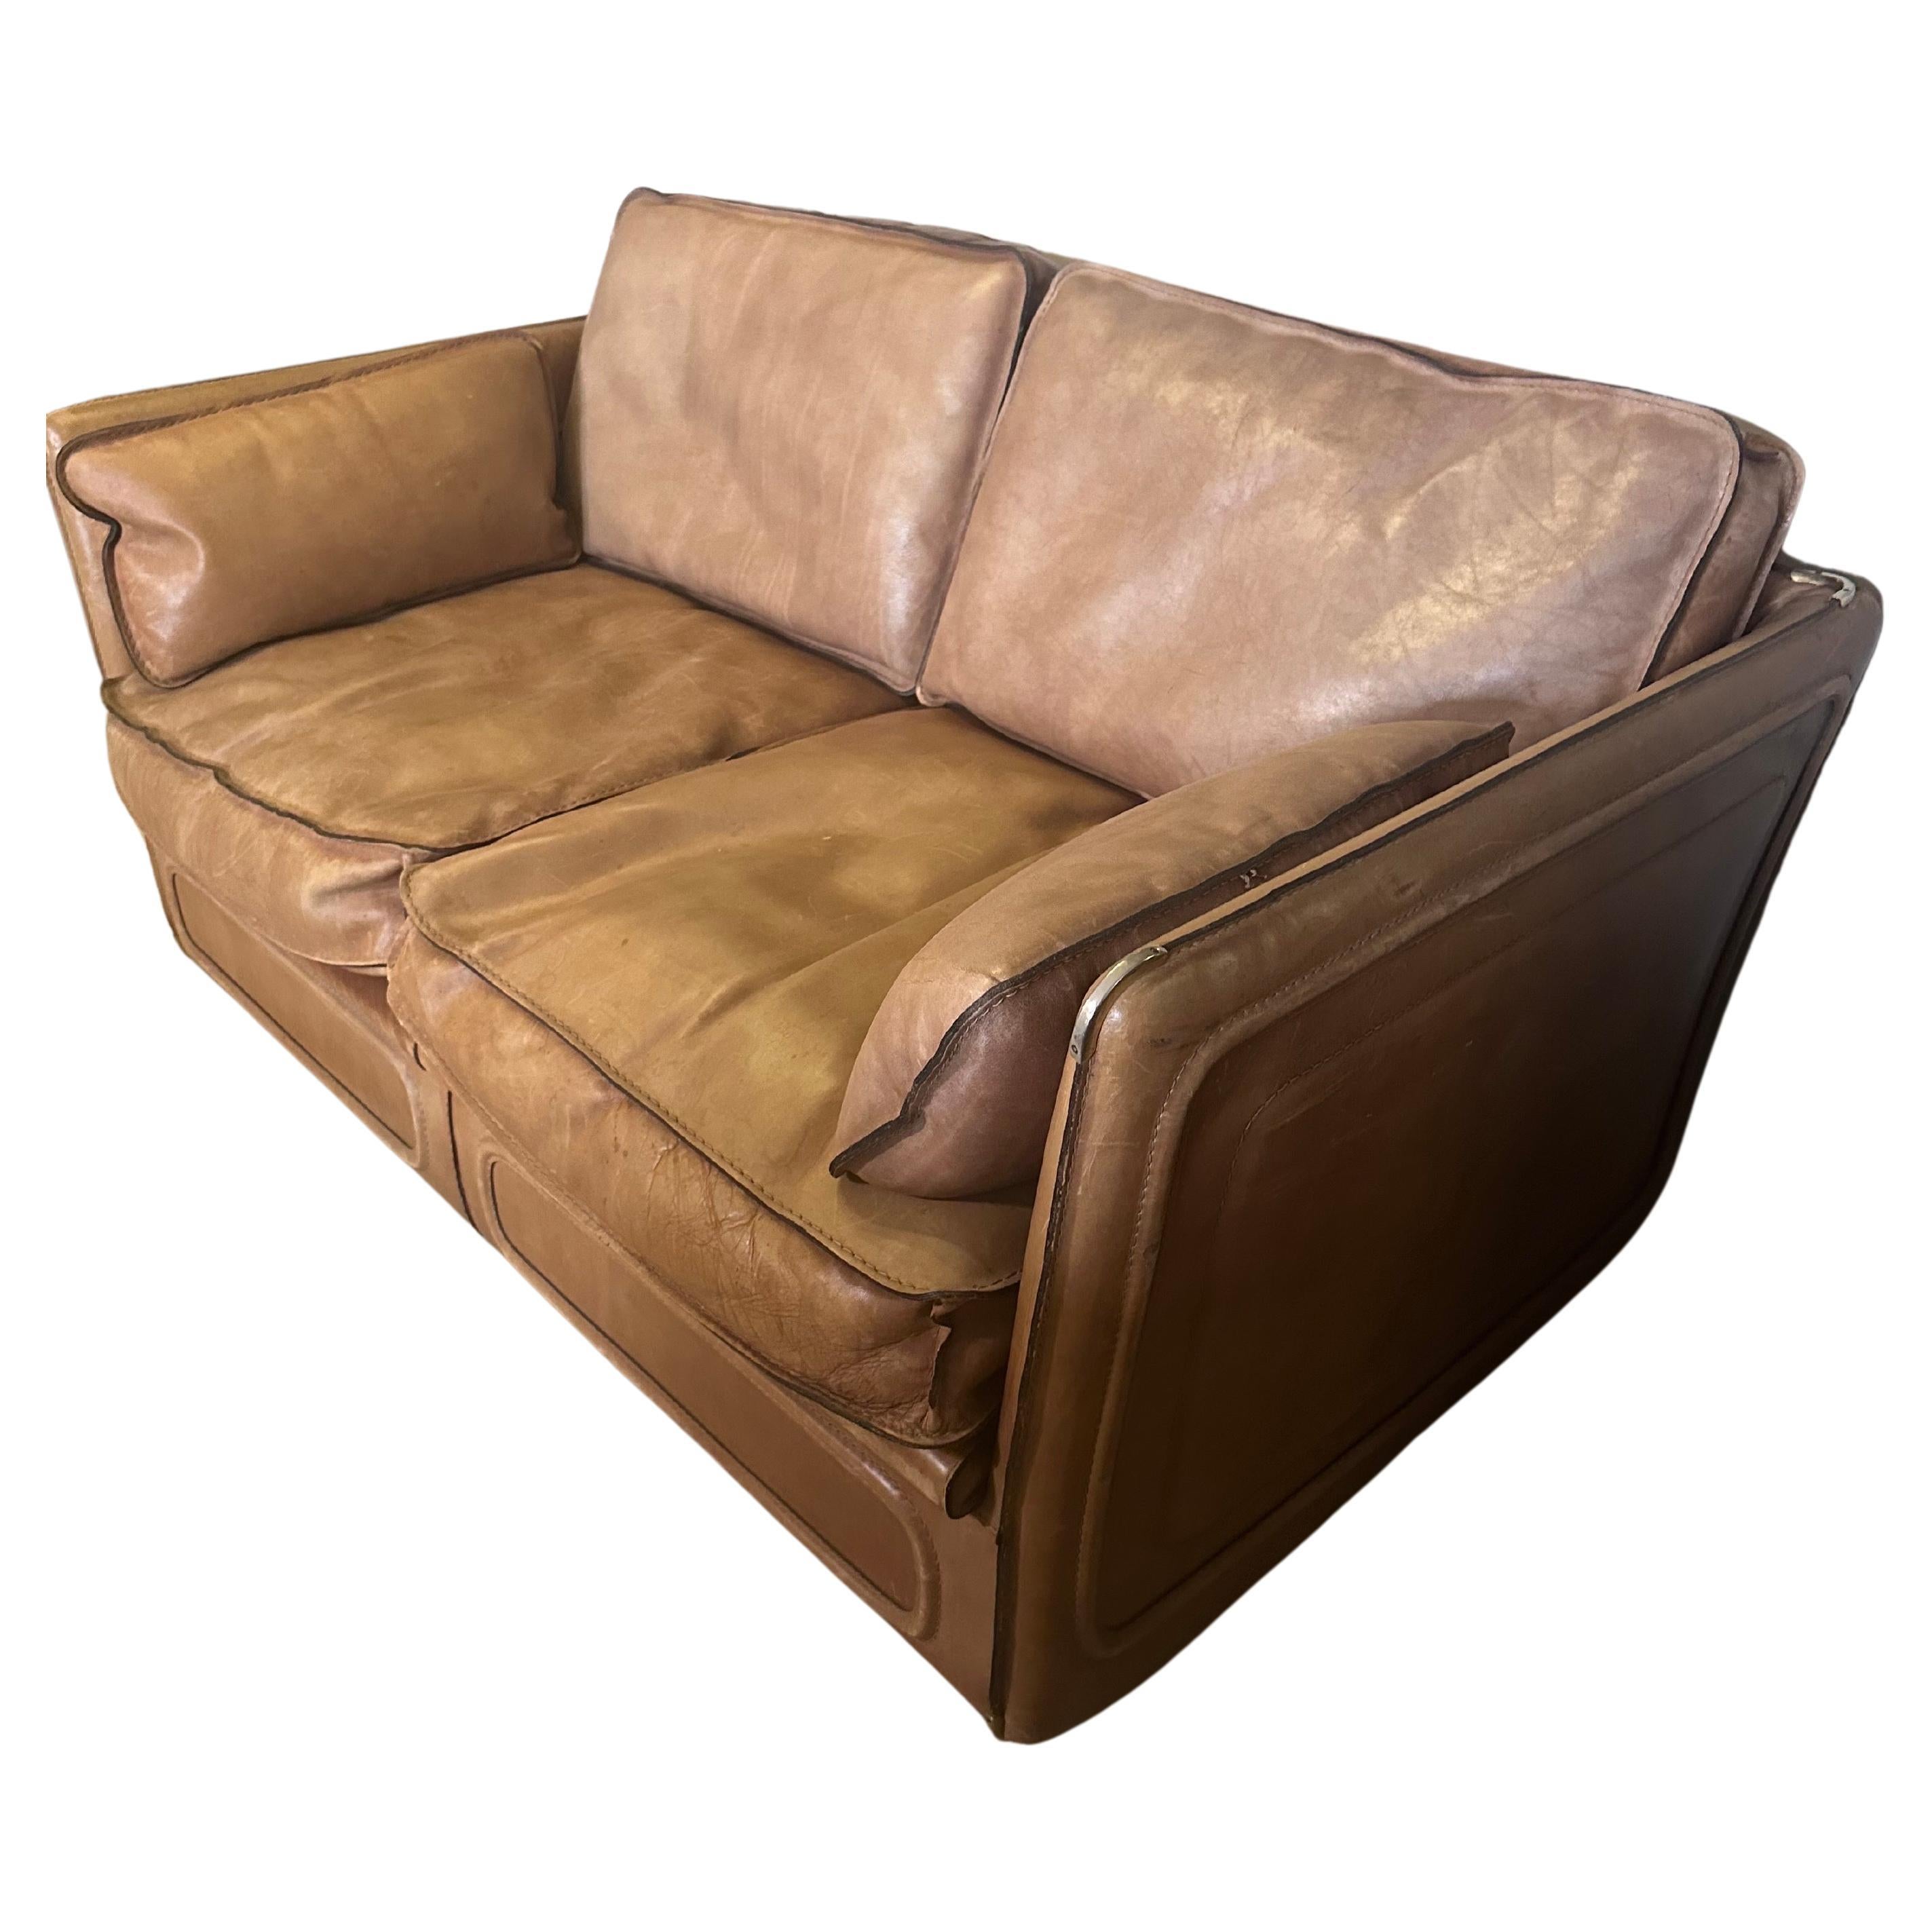 Leather Roche Bobois sofa For Sale